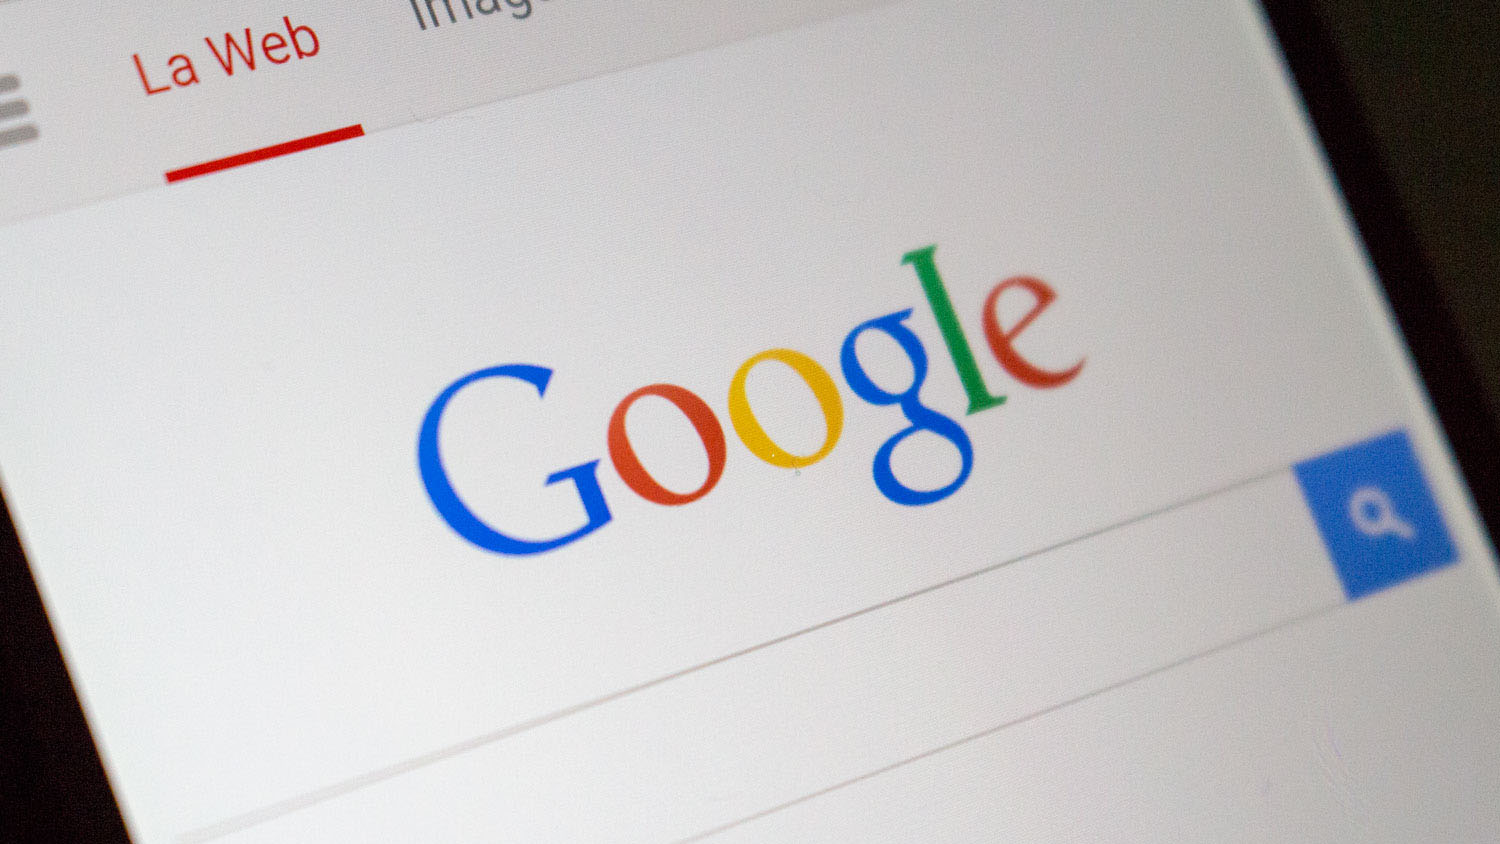 Google celebra dos décadas con un video "doodle"